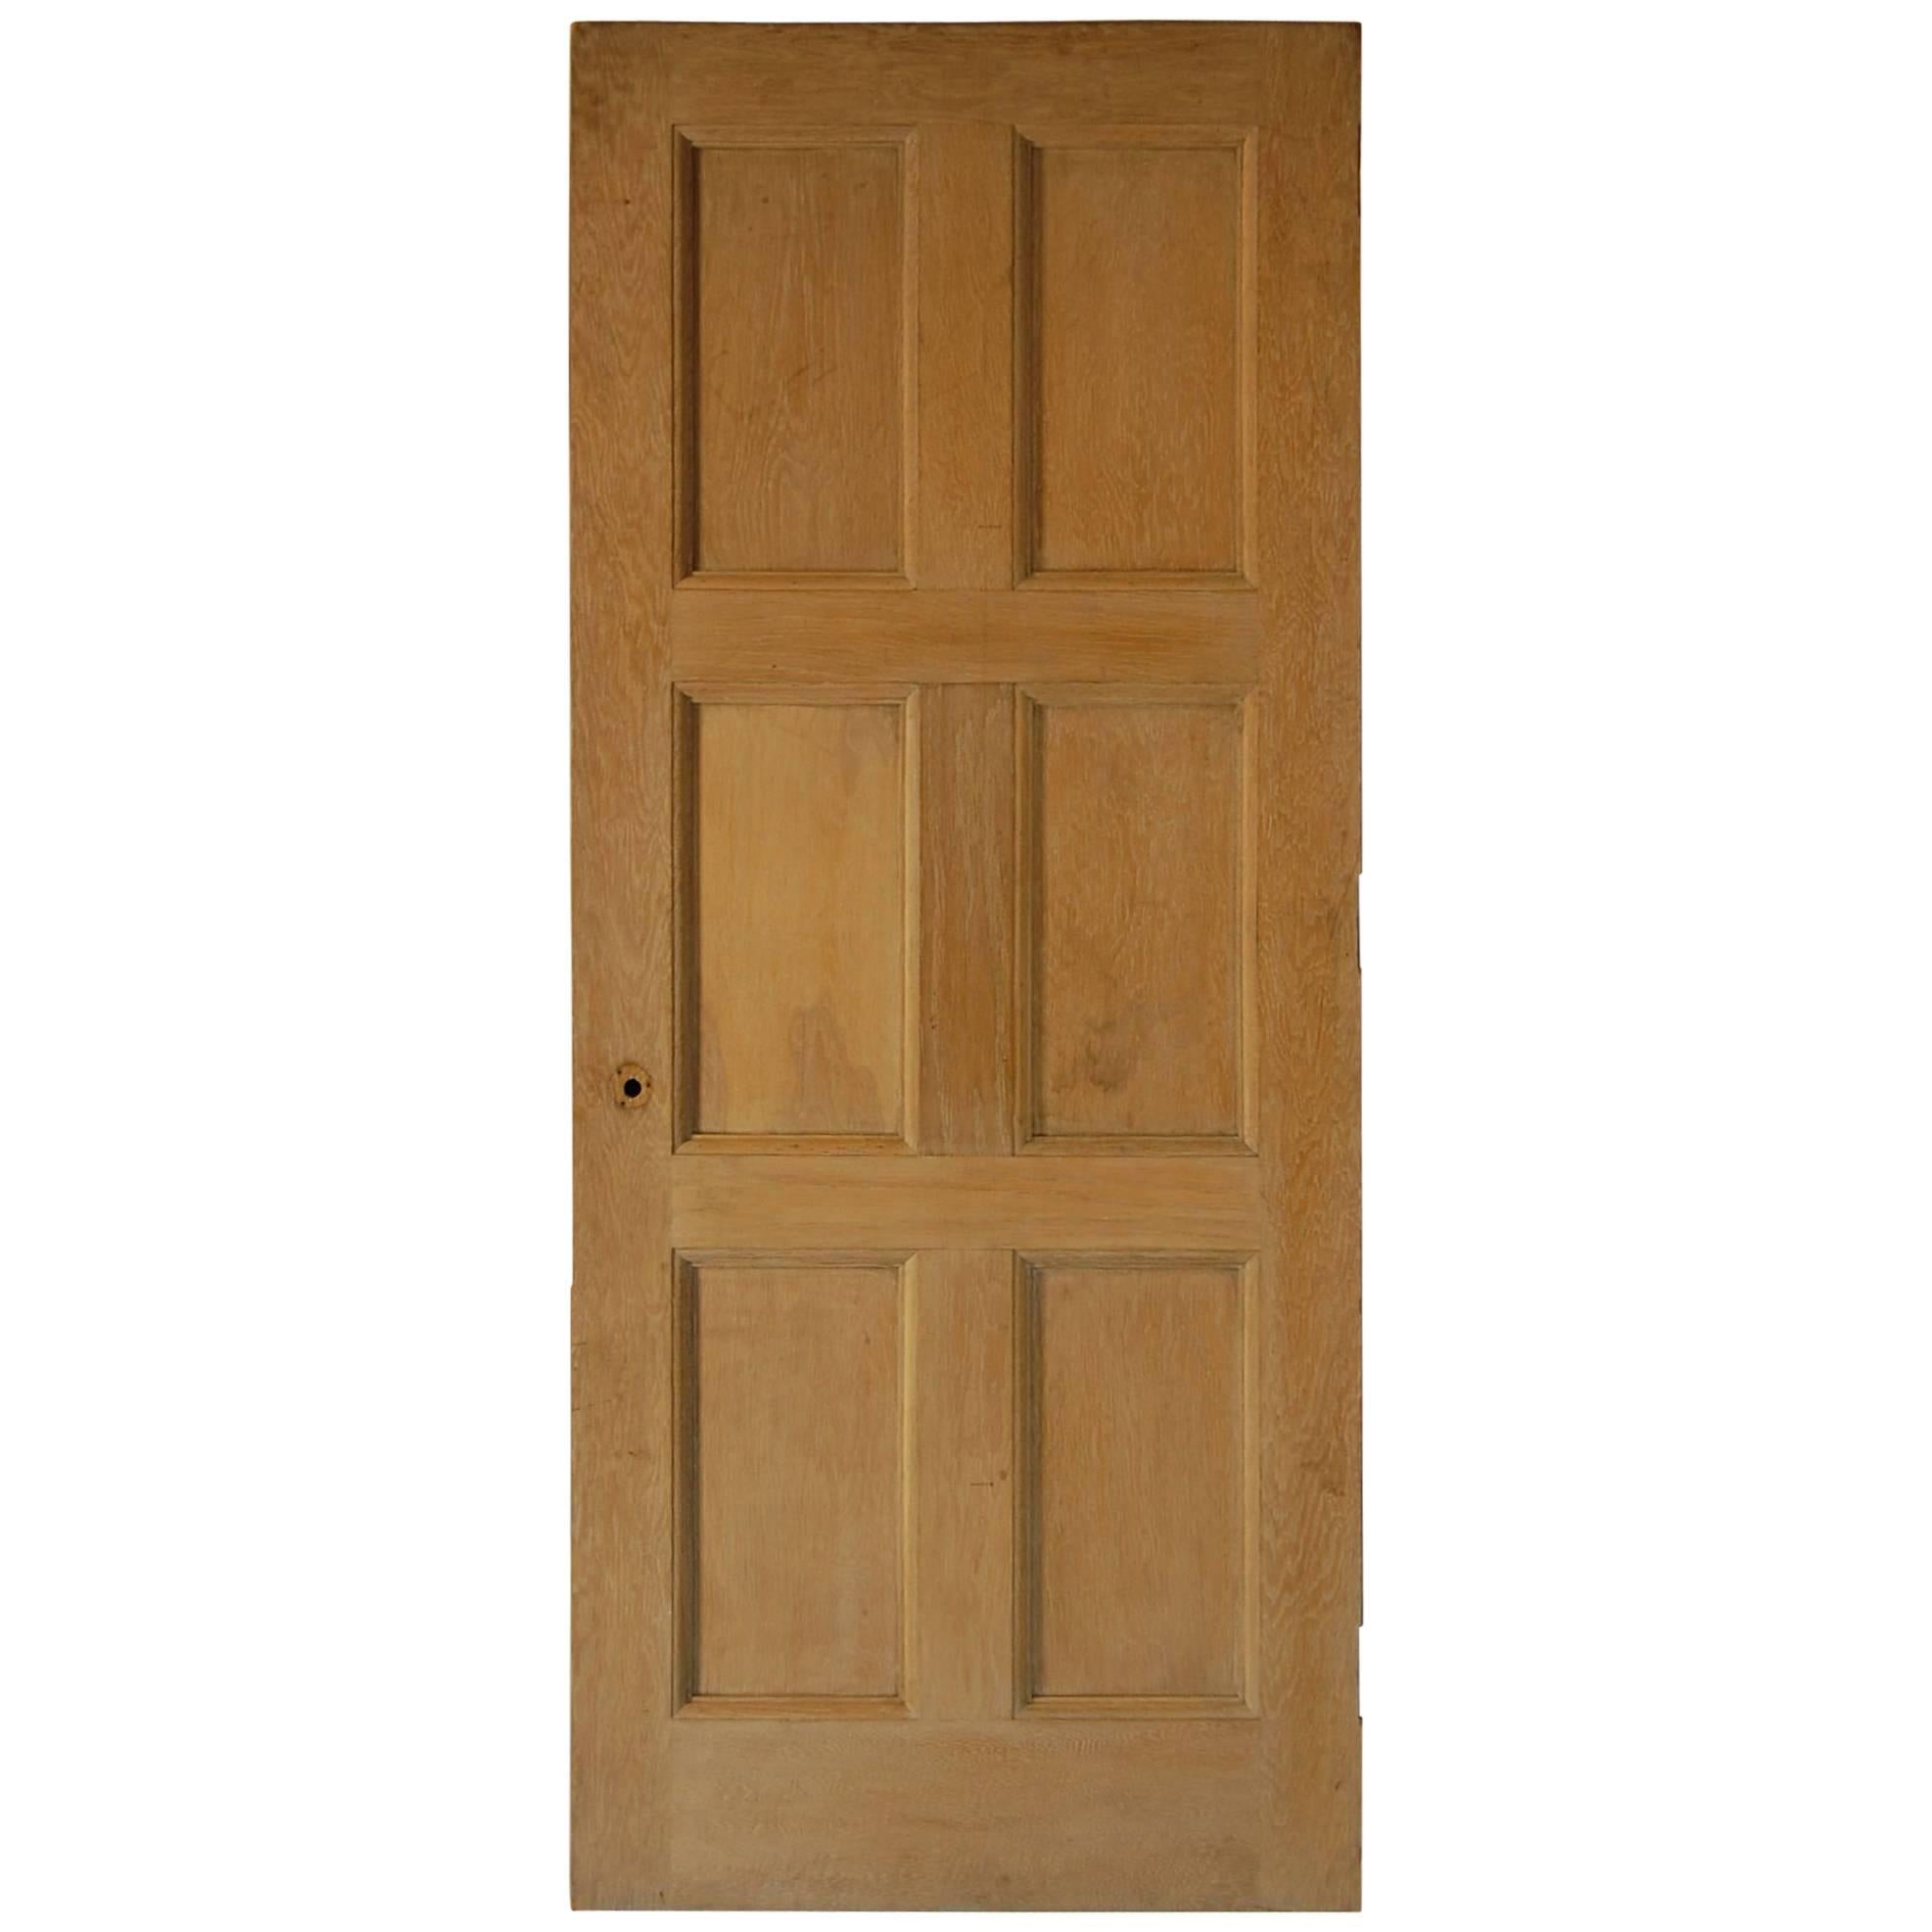 Solid Oak Recessed Panelled Door, circa 1926